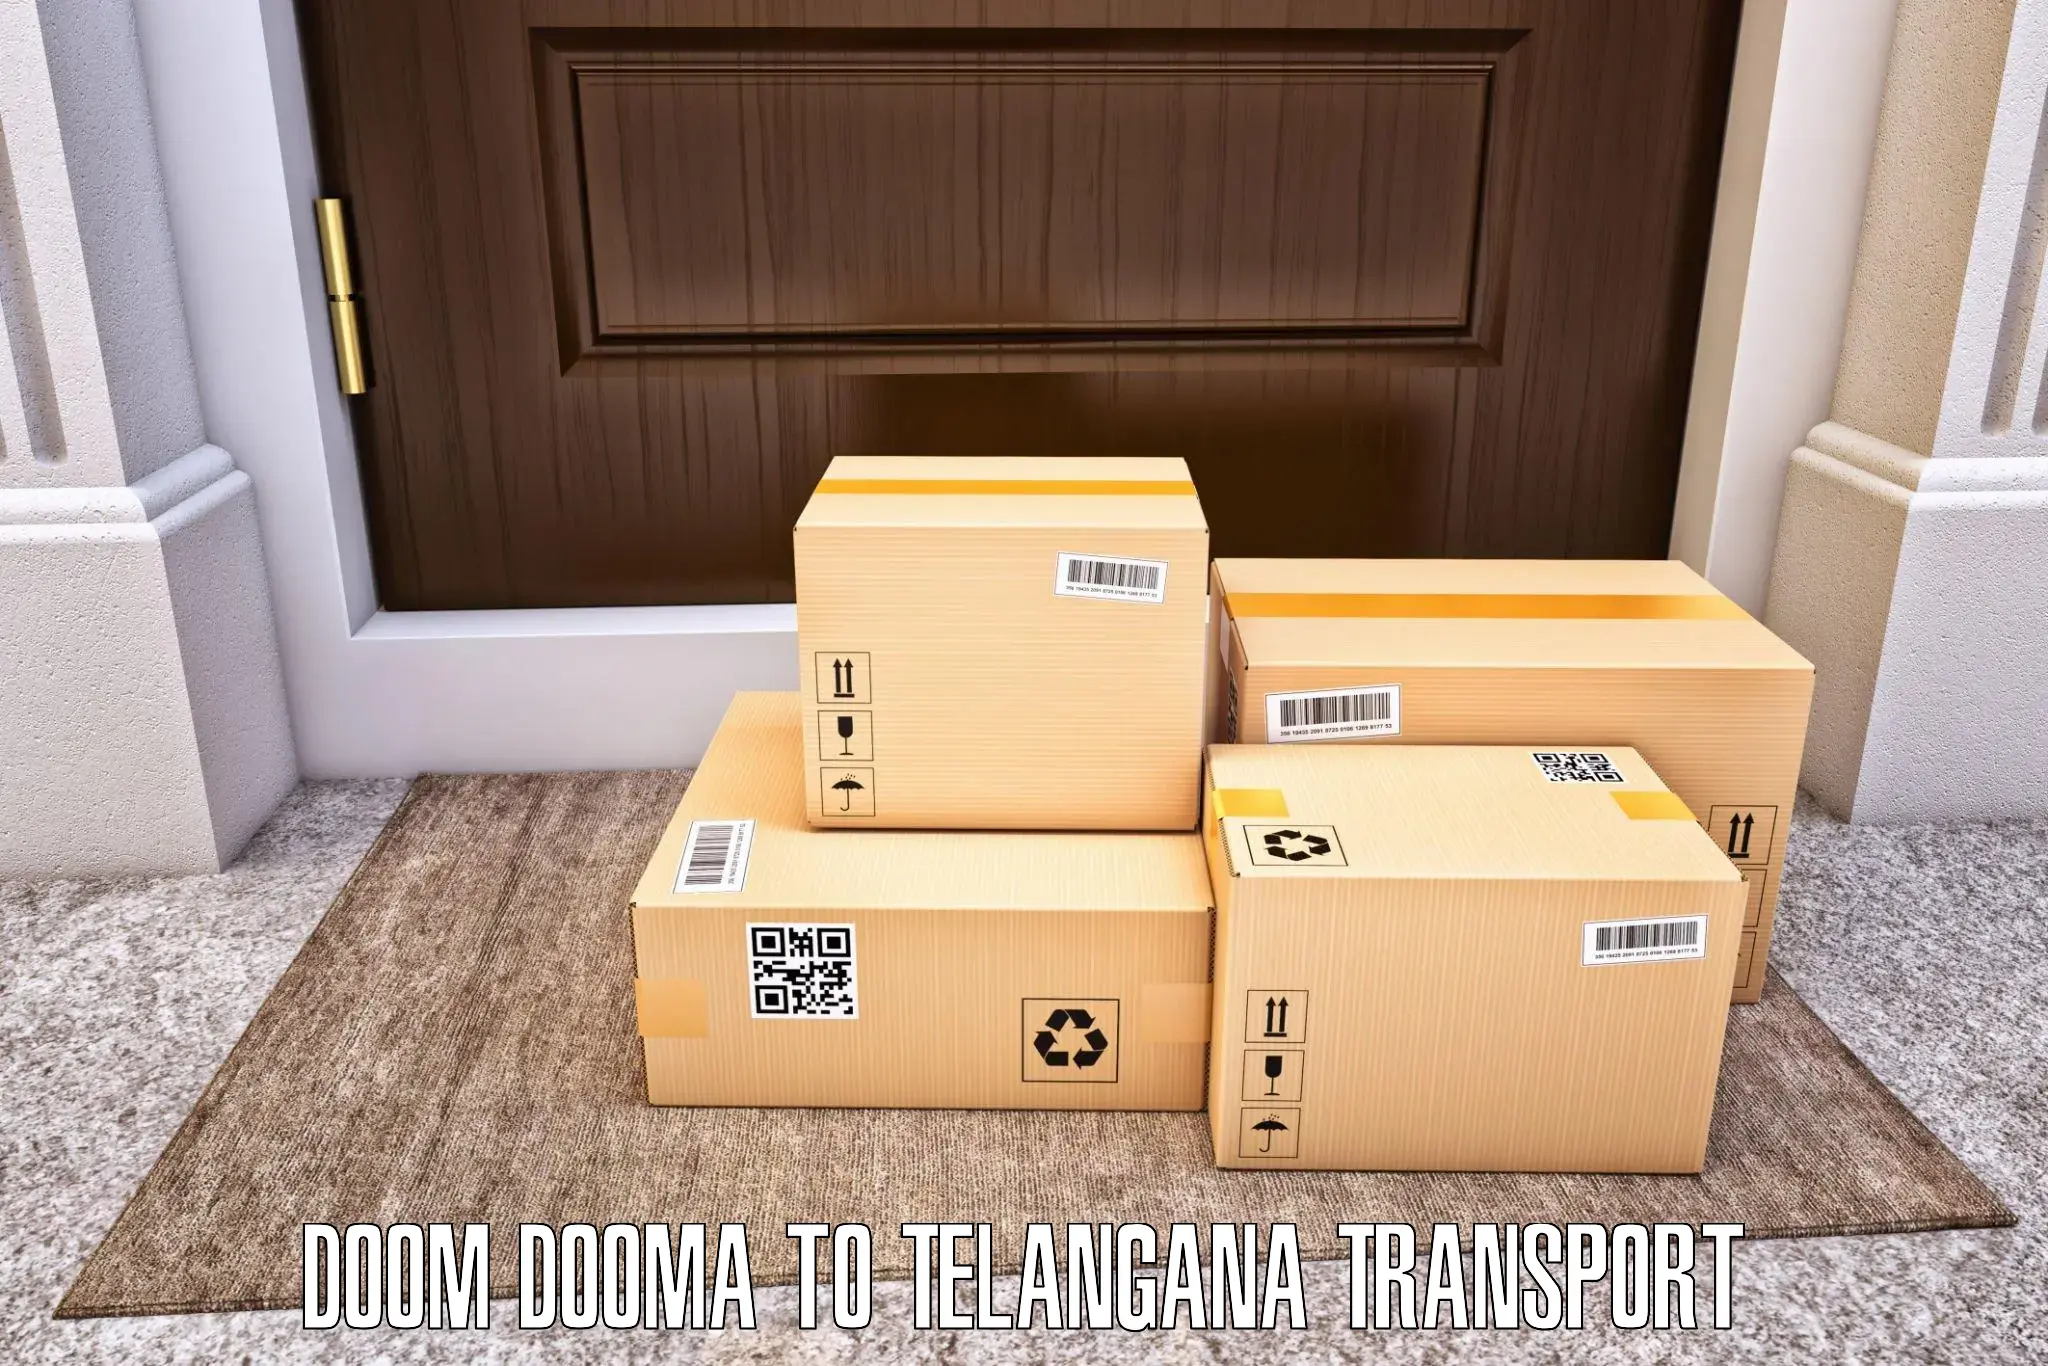 Cargo transport services Doom Dooma to Manuguru